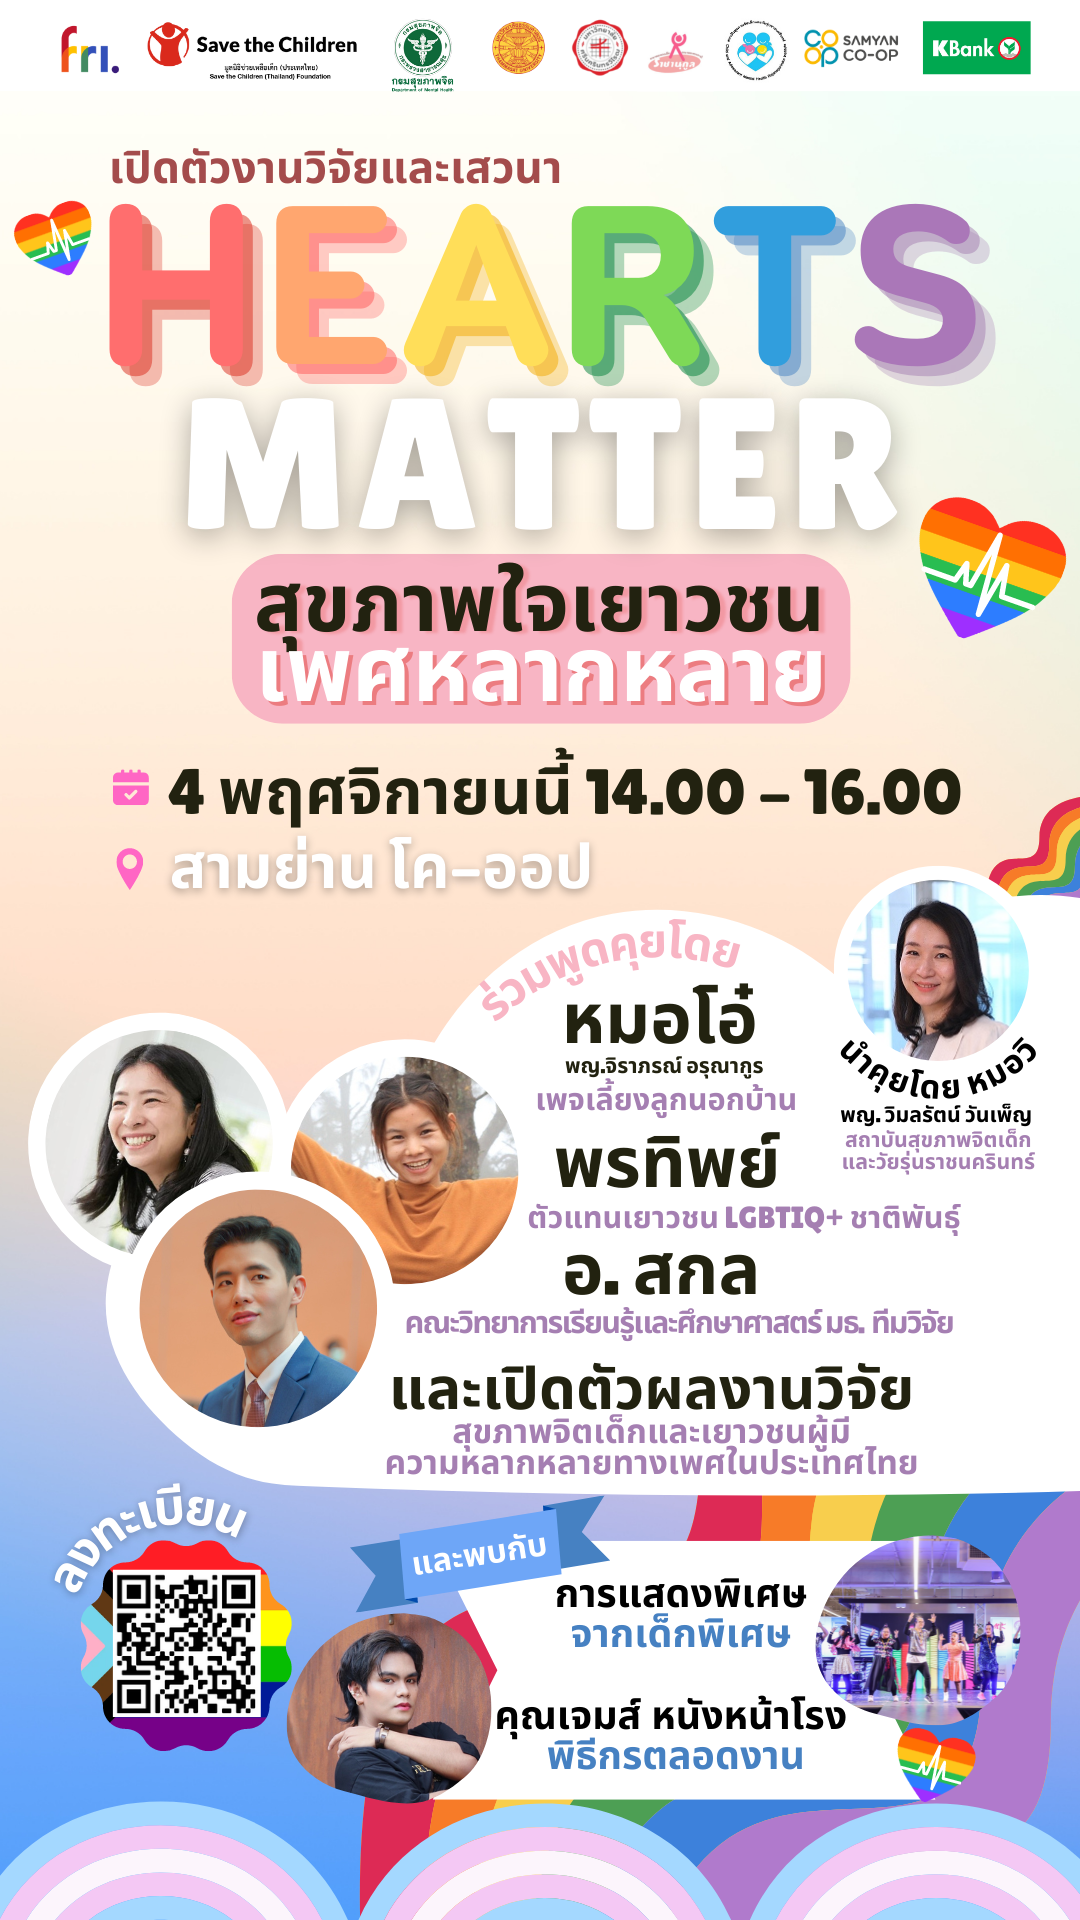 มูลนิธิช่วยเหลือเด็ก (ประเทศไทย) ร่วมกับกรมสุขภาพจิต กระทรวงสาธารณสุข ขอเชิญชวนเข้าร่วมงาน “HEARTS MATTER: สุขภาพใจเยาวชนเพศหลากหลาย” 